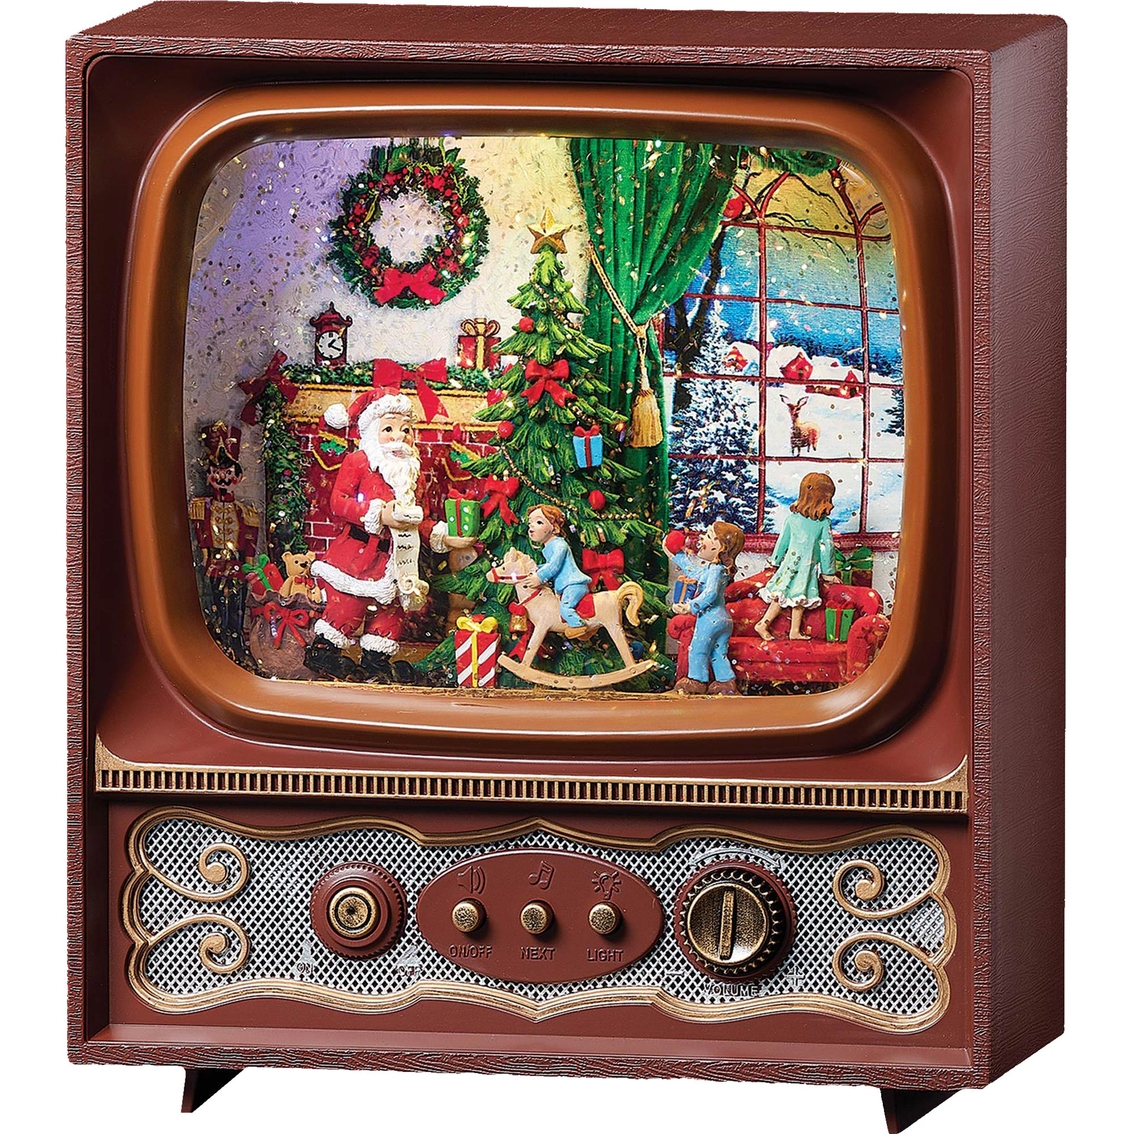 Roman 9.7 in. LED Swirl TV Santa